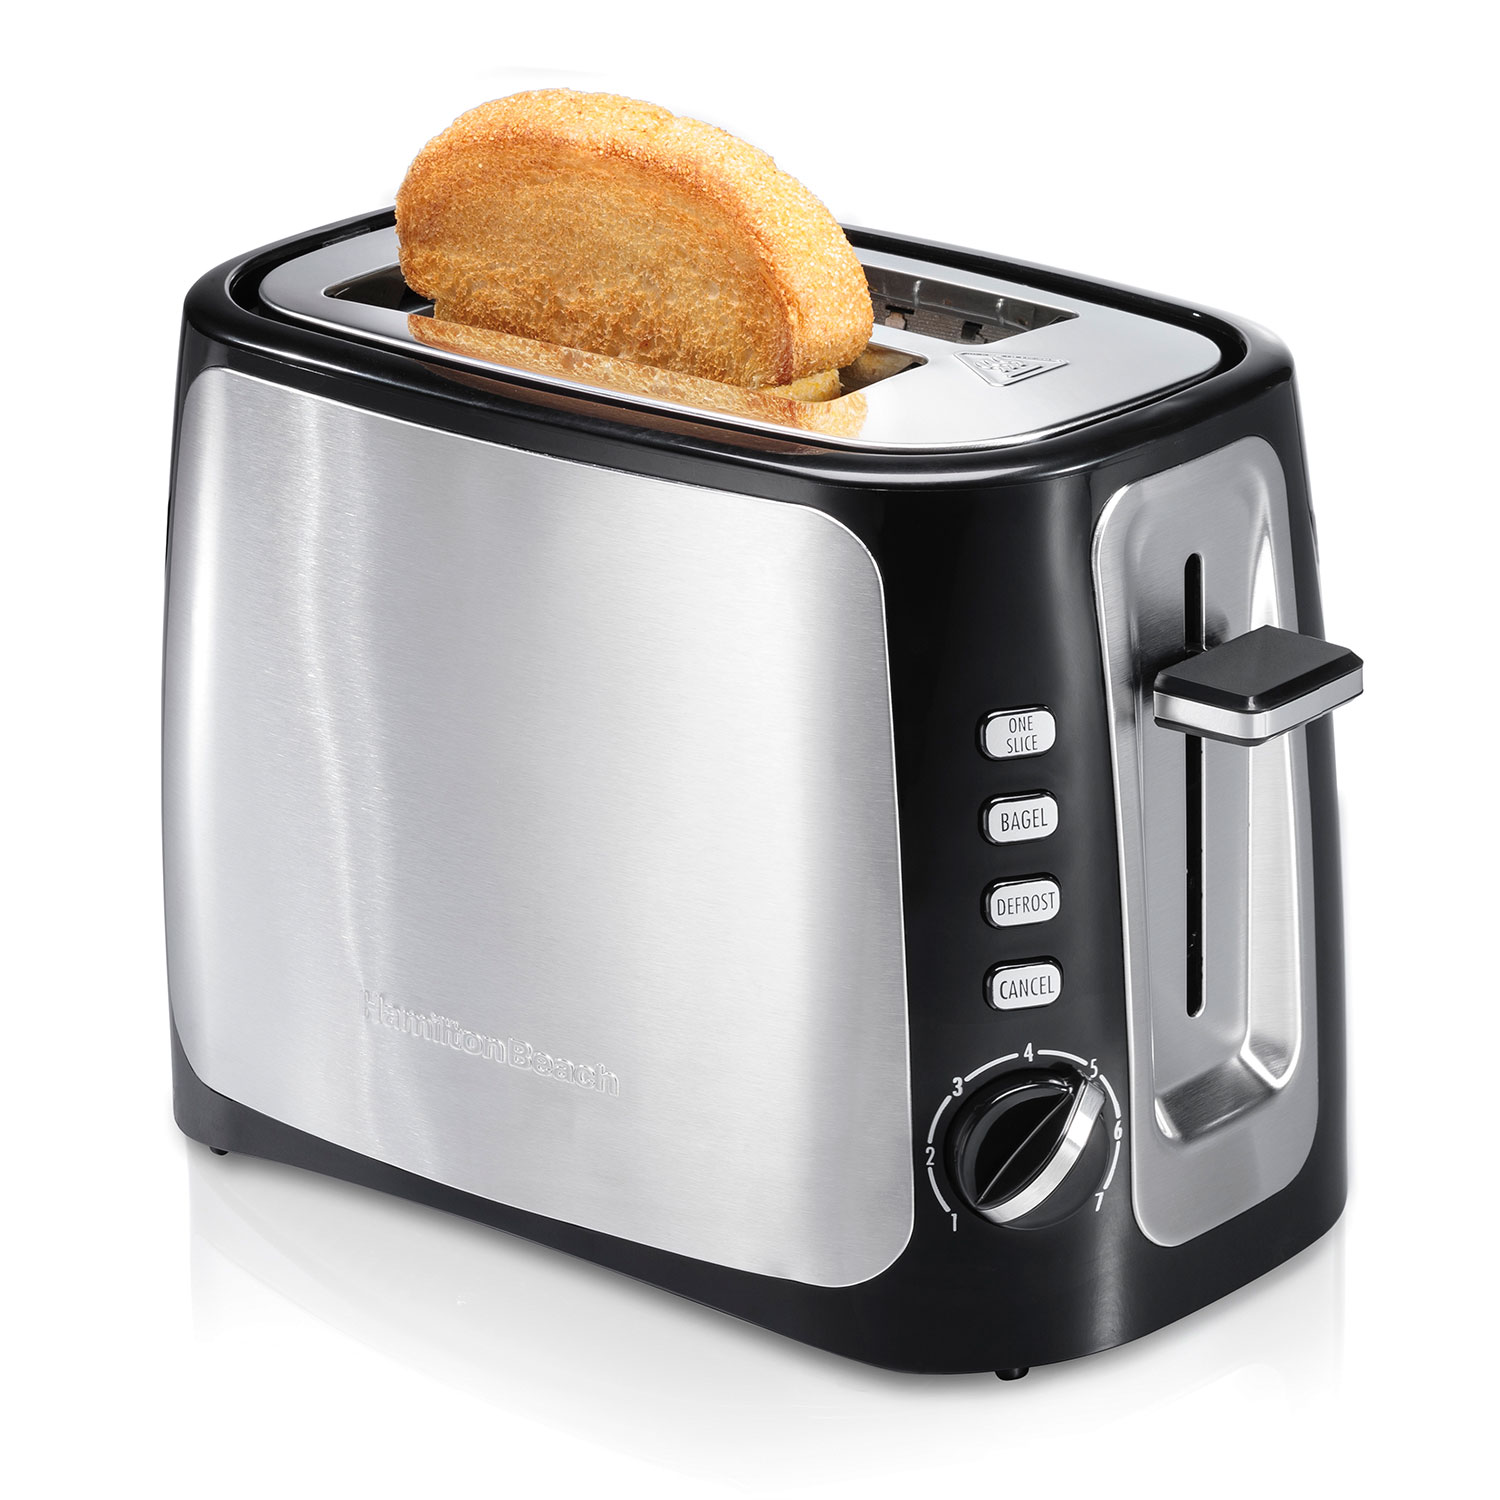 Sure-Toast™ 2 Slice Toaster with Toast Boost (22820)